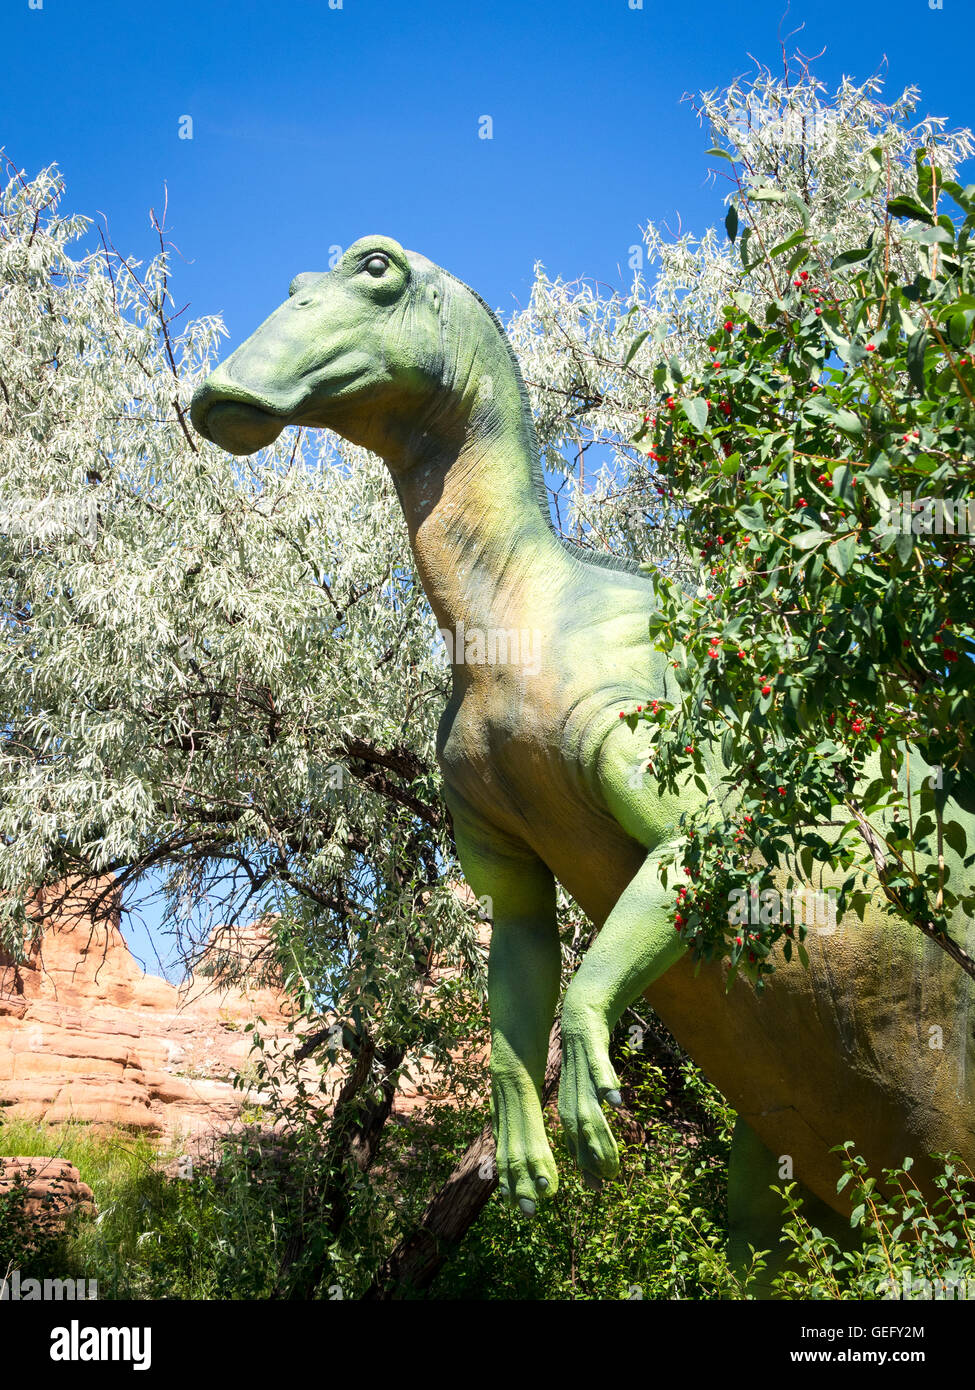 Ein Modell Nachbildung eines Edmontosaurus, eine Gattung der Lagena (Ente-berechnet) Dinosaurier. Zoo von Calgary, Calgary, Alberta, Kanada. Stockfoto